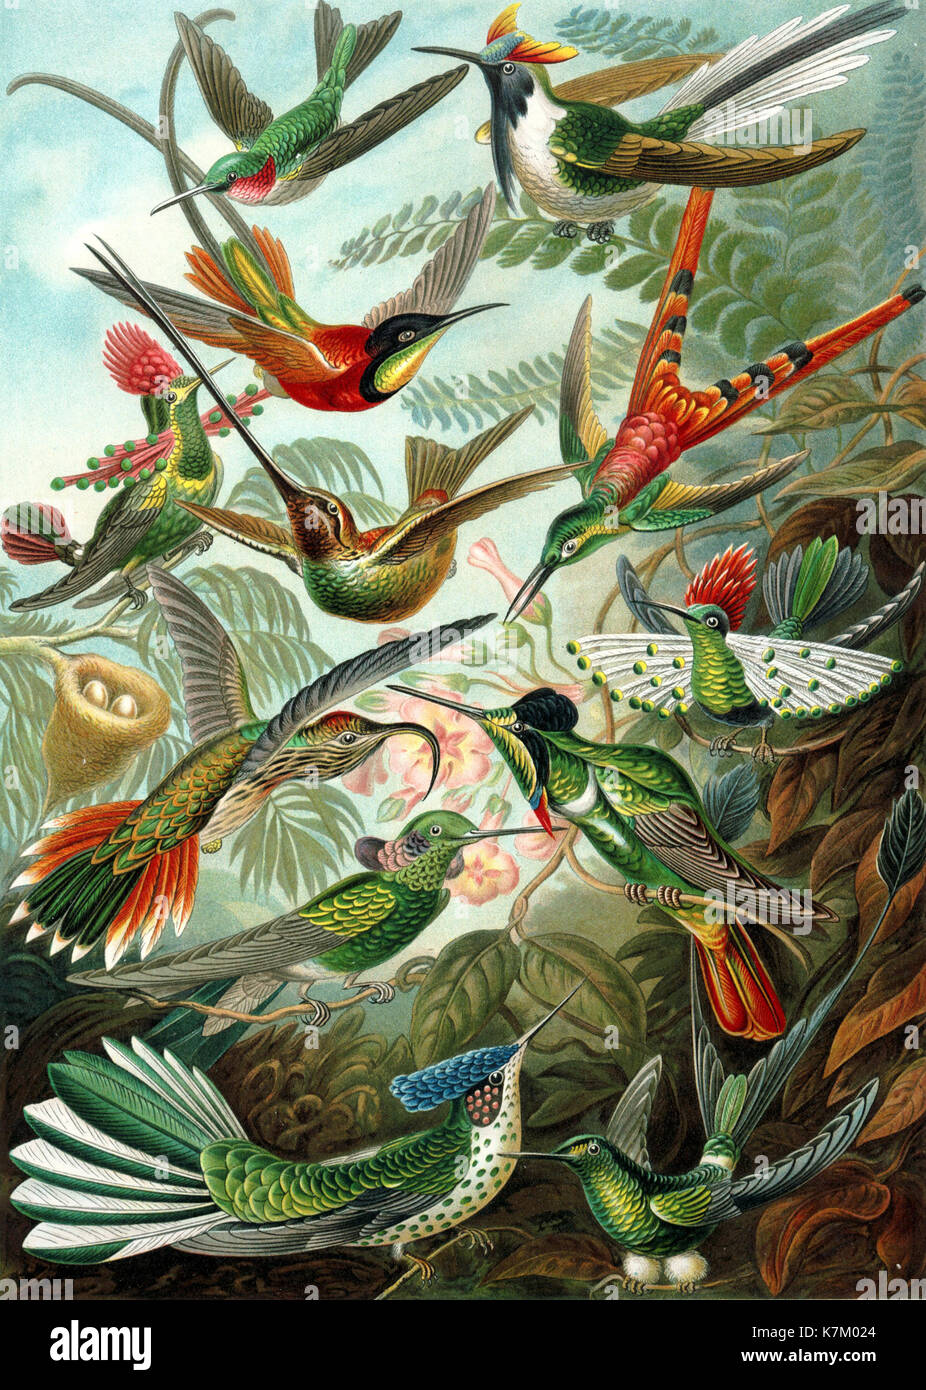 Ernst HAECKEL (1834-1919) biologiste allemand, médecin, naturaliste. Les oiseaux bourdonnants rom ses Kunstformen de Natur (formes d'art de la nature) publié 1904 Banque D'Images